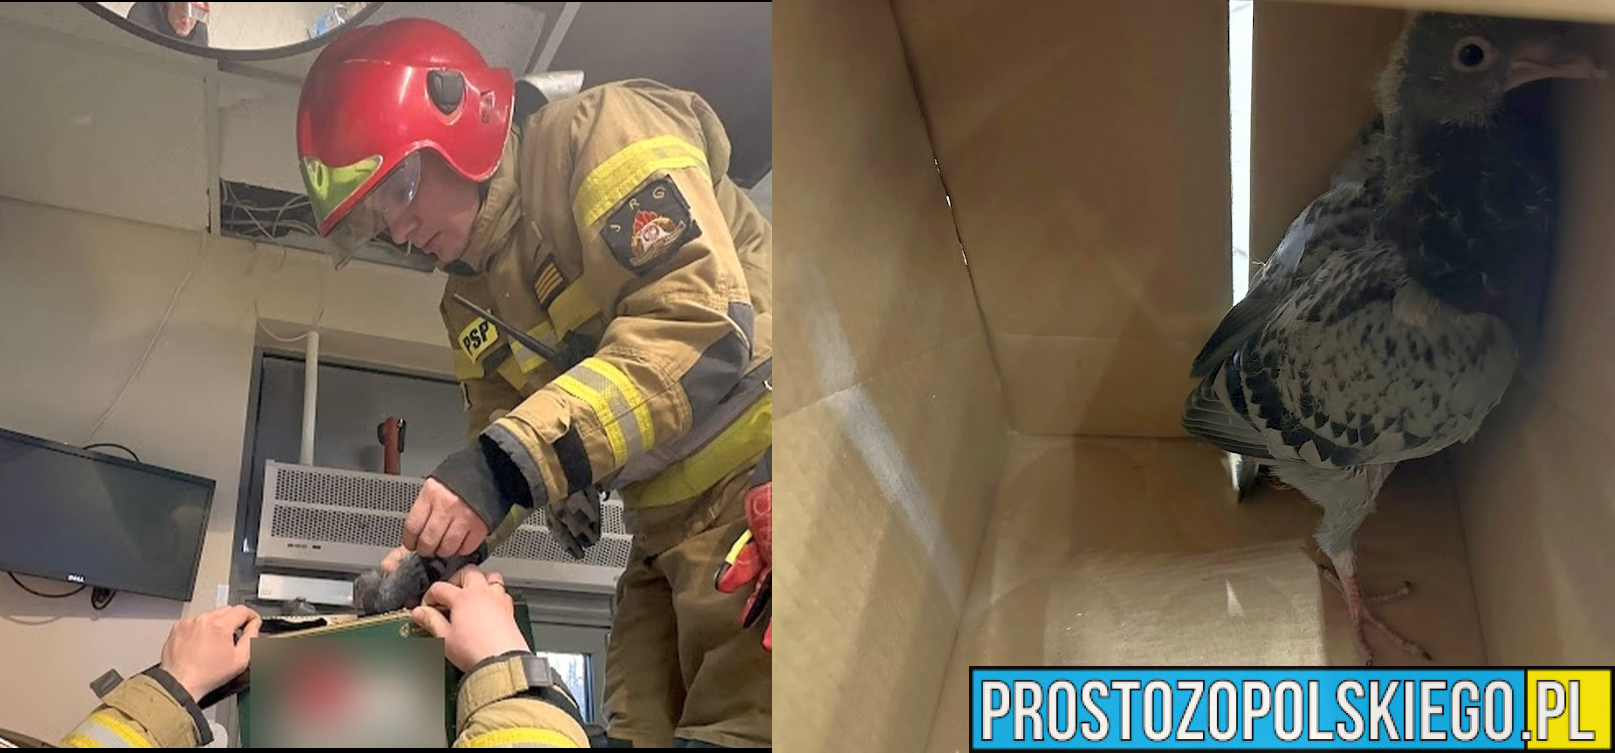 Nietypowe zgłoszenie na ul.1-go maja w sklepie. W akcji strażacy z JRG1 Opole.(Zdjęcia&Wideo)